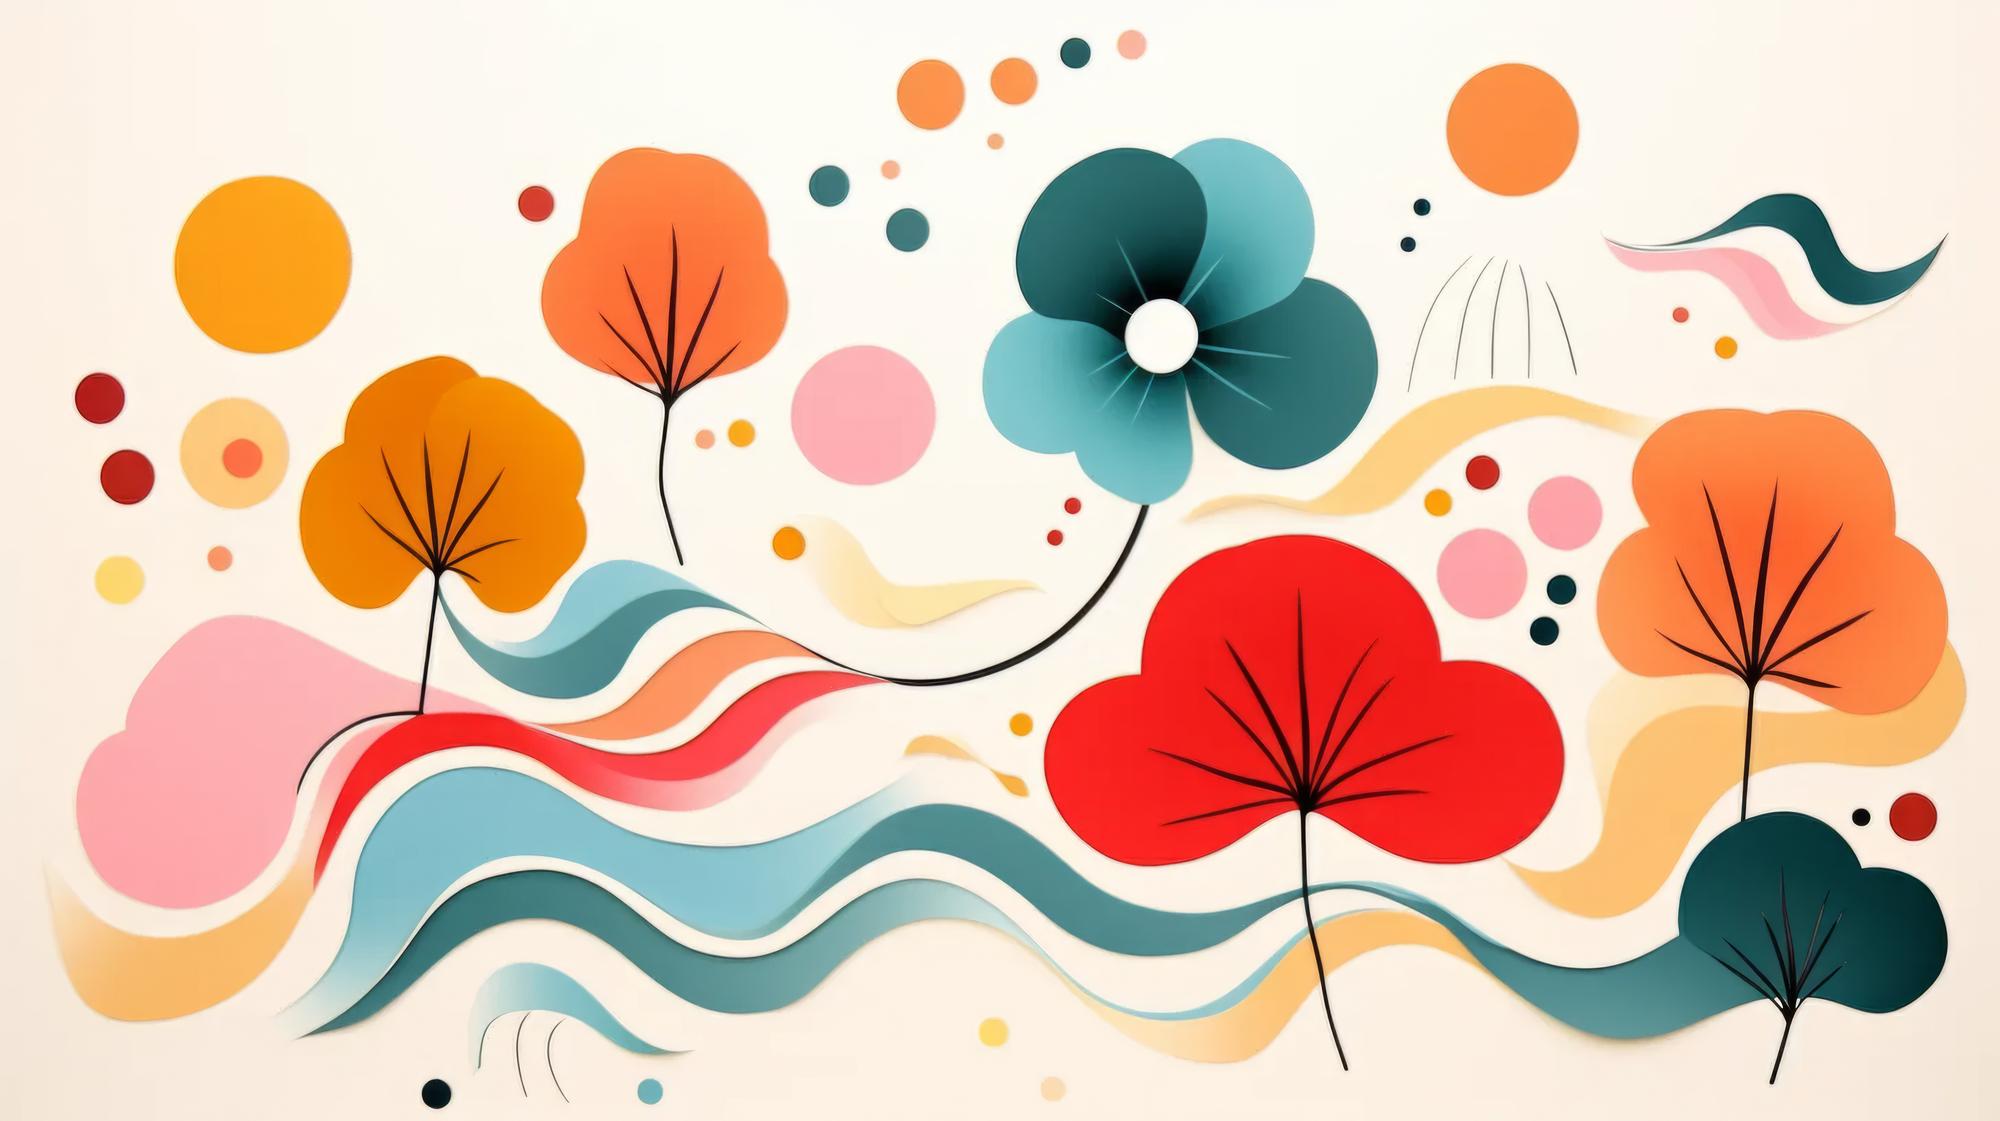 Abstracte kleurrijke bloemige vormen Helder levendig organisch patroon Eenvoudige naïeve stijl illustratie